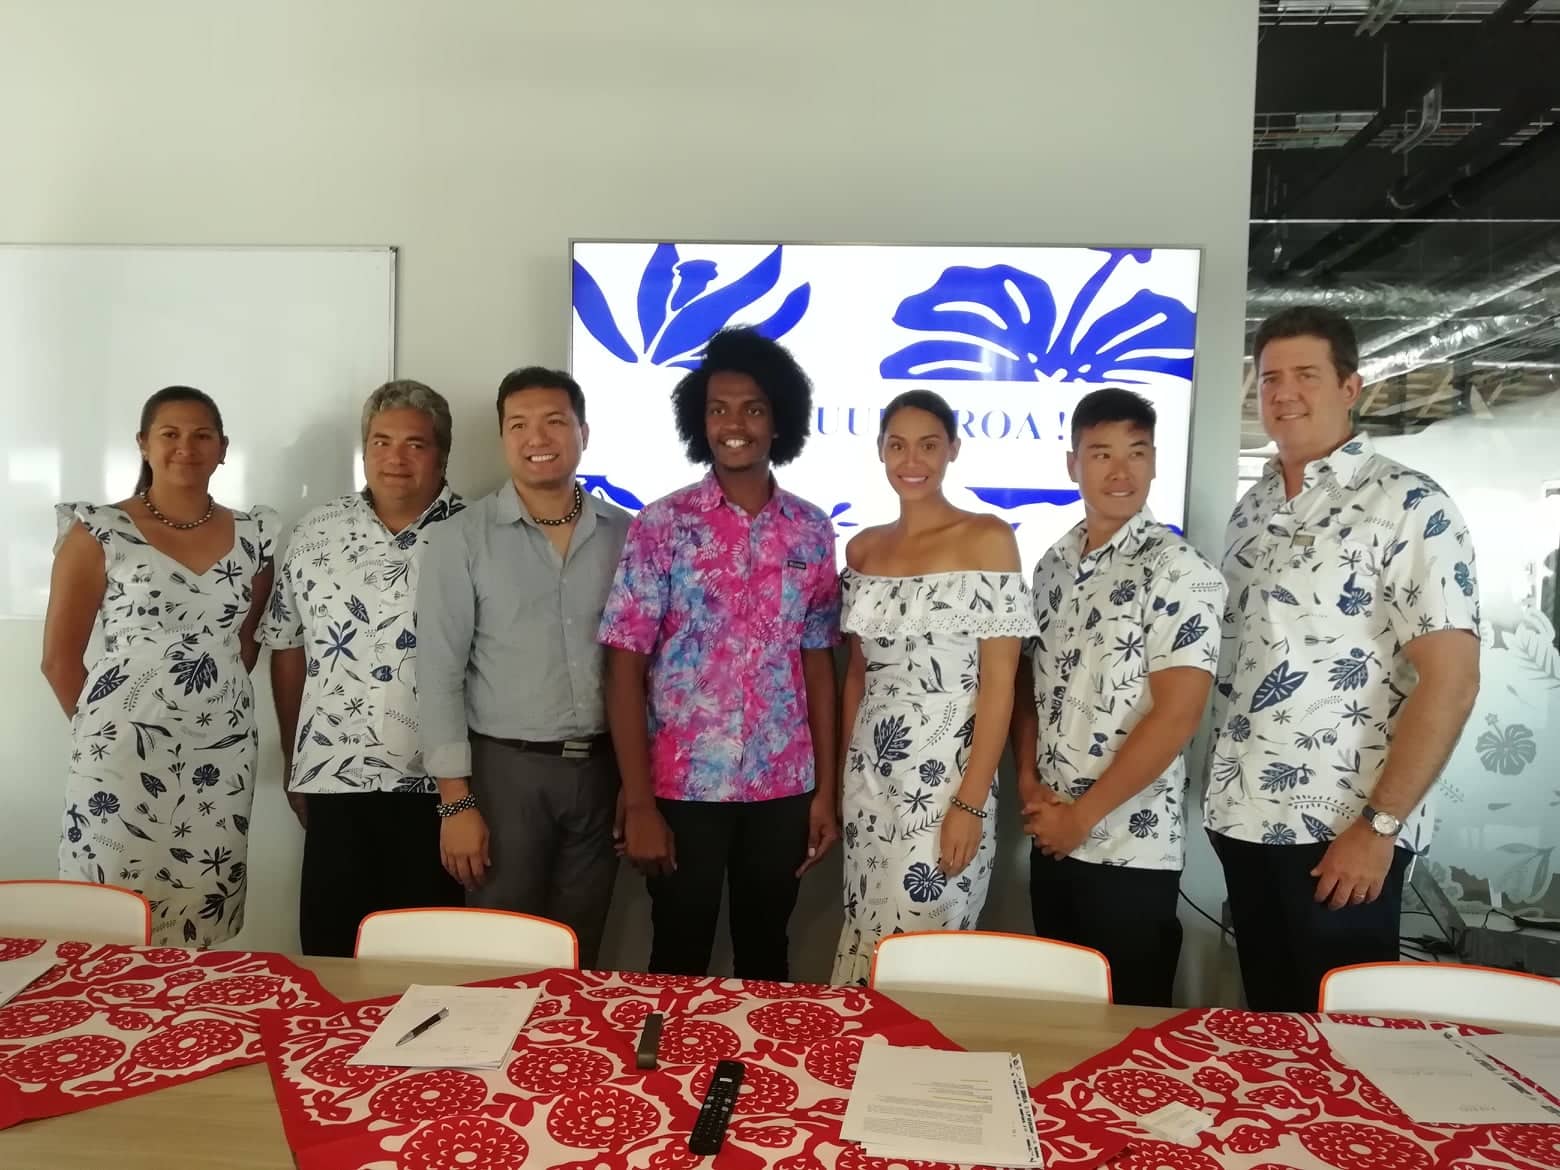 La conférence annuelle de Tahiti Tourisme aura lieu le 3 septembre.